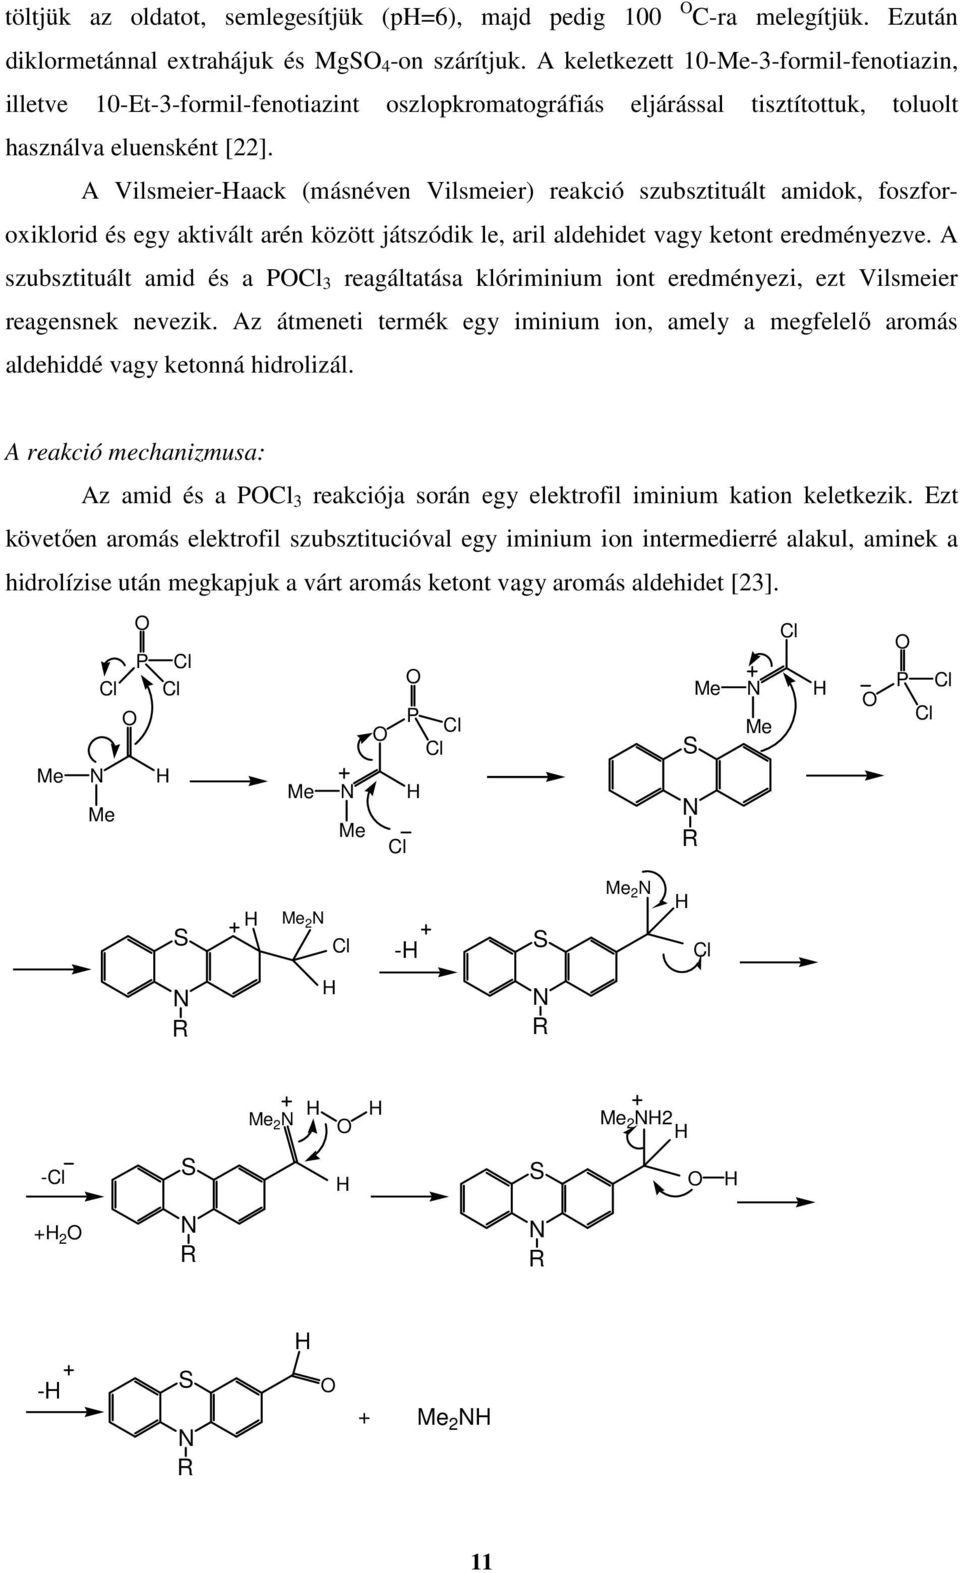 A Vilsmeier-aack (másnéven Vilsmeier) reakció szubsztituált amidok, foszforoxiklorid és egy aktivált arén között játszódik le, aril aldehidet vagy ketont eredményezve.